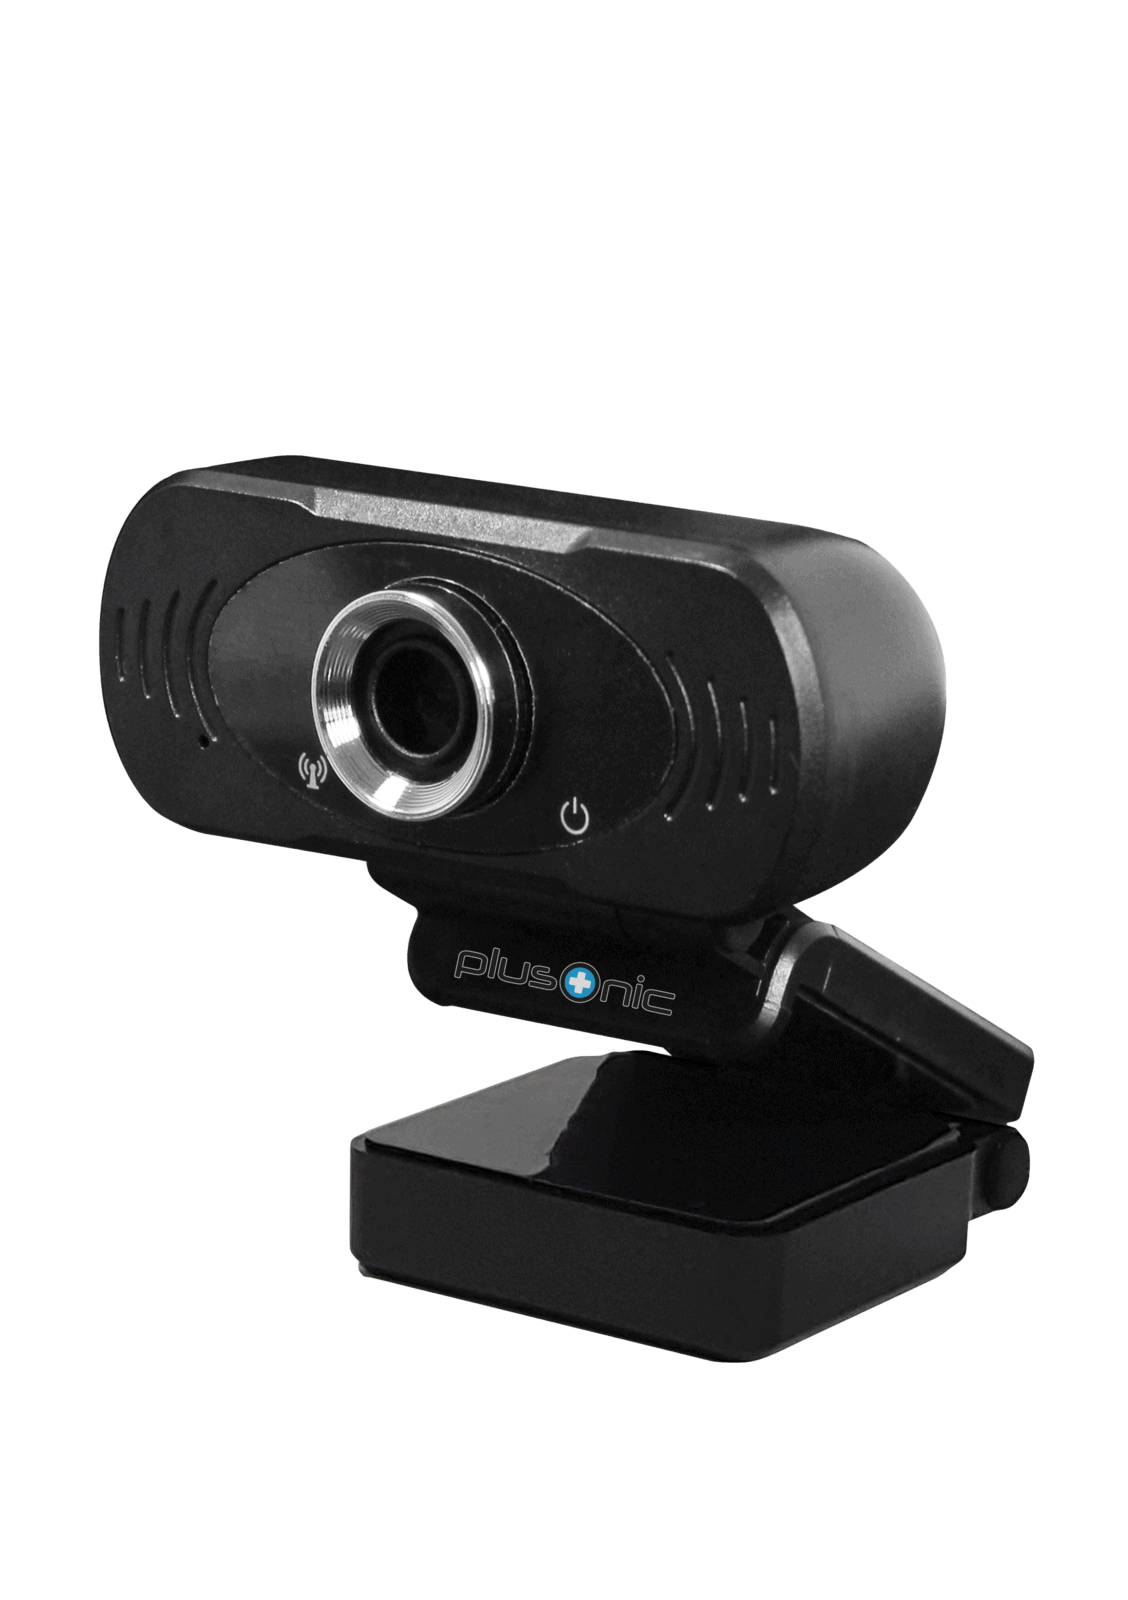 Plusonice USB Webcam